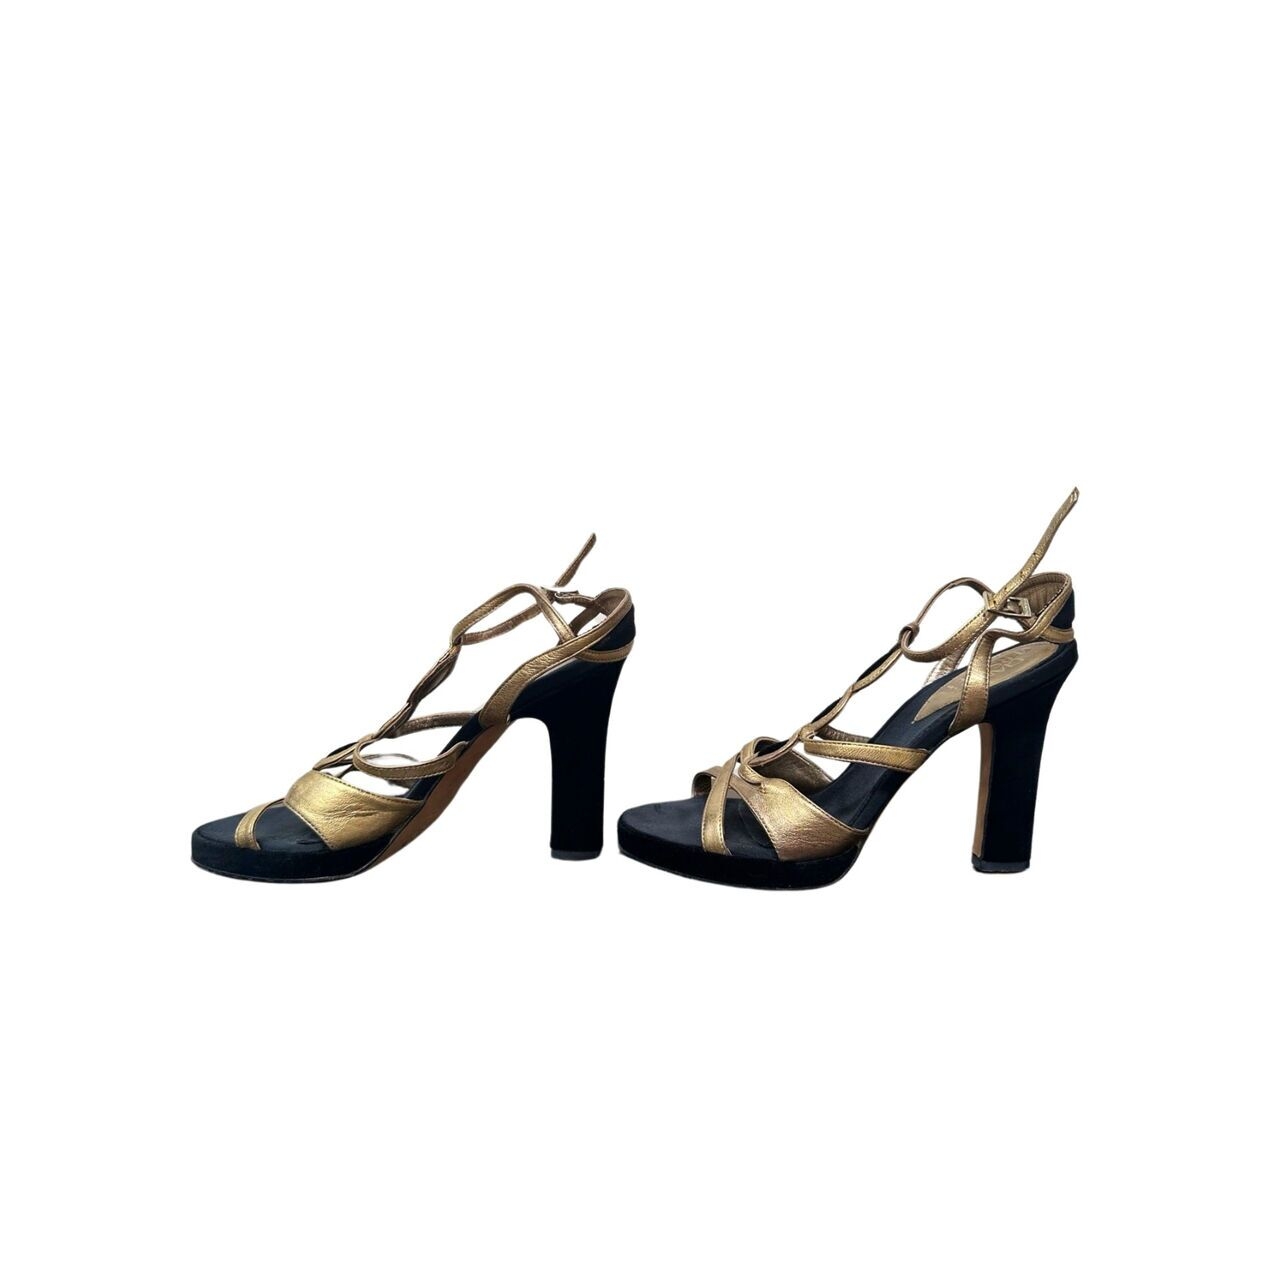 Gianni Versace Gold & Black Heels